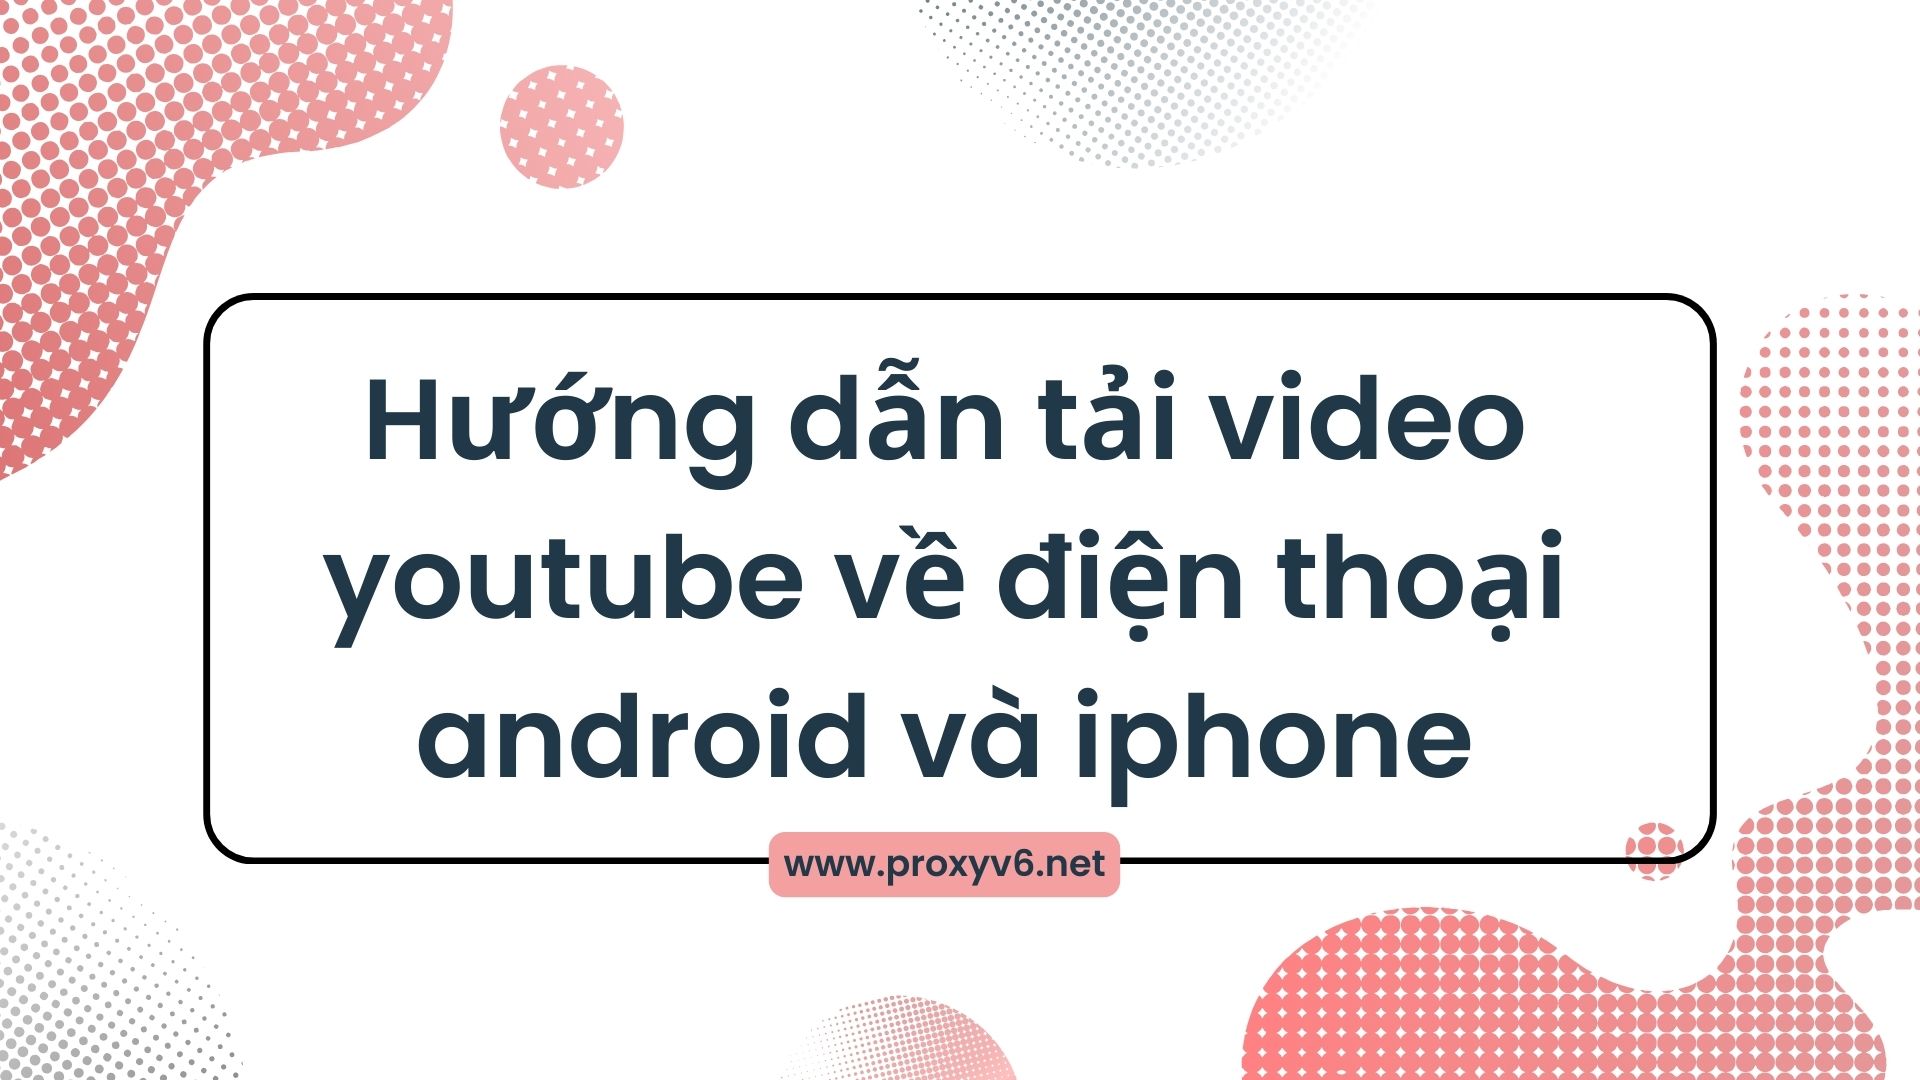 Hướng dẫn tải video youtube về điện thoại android và iphone